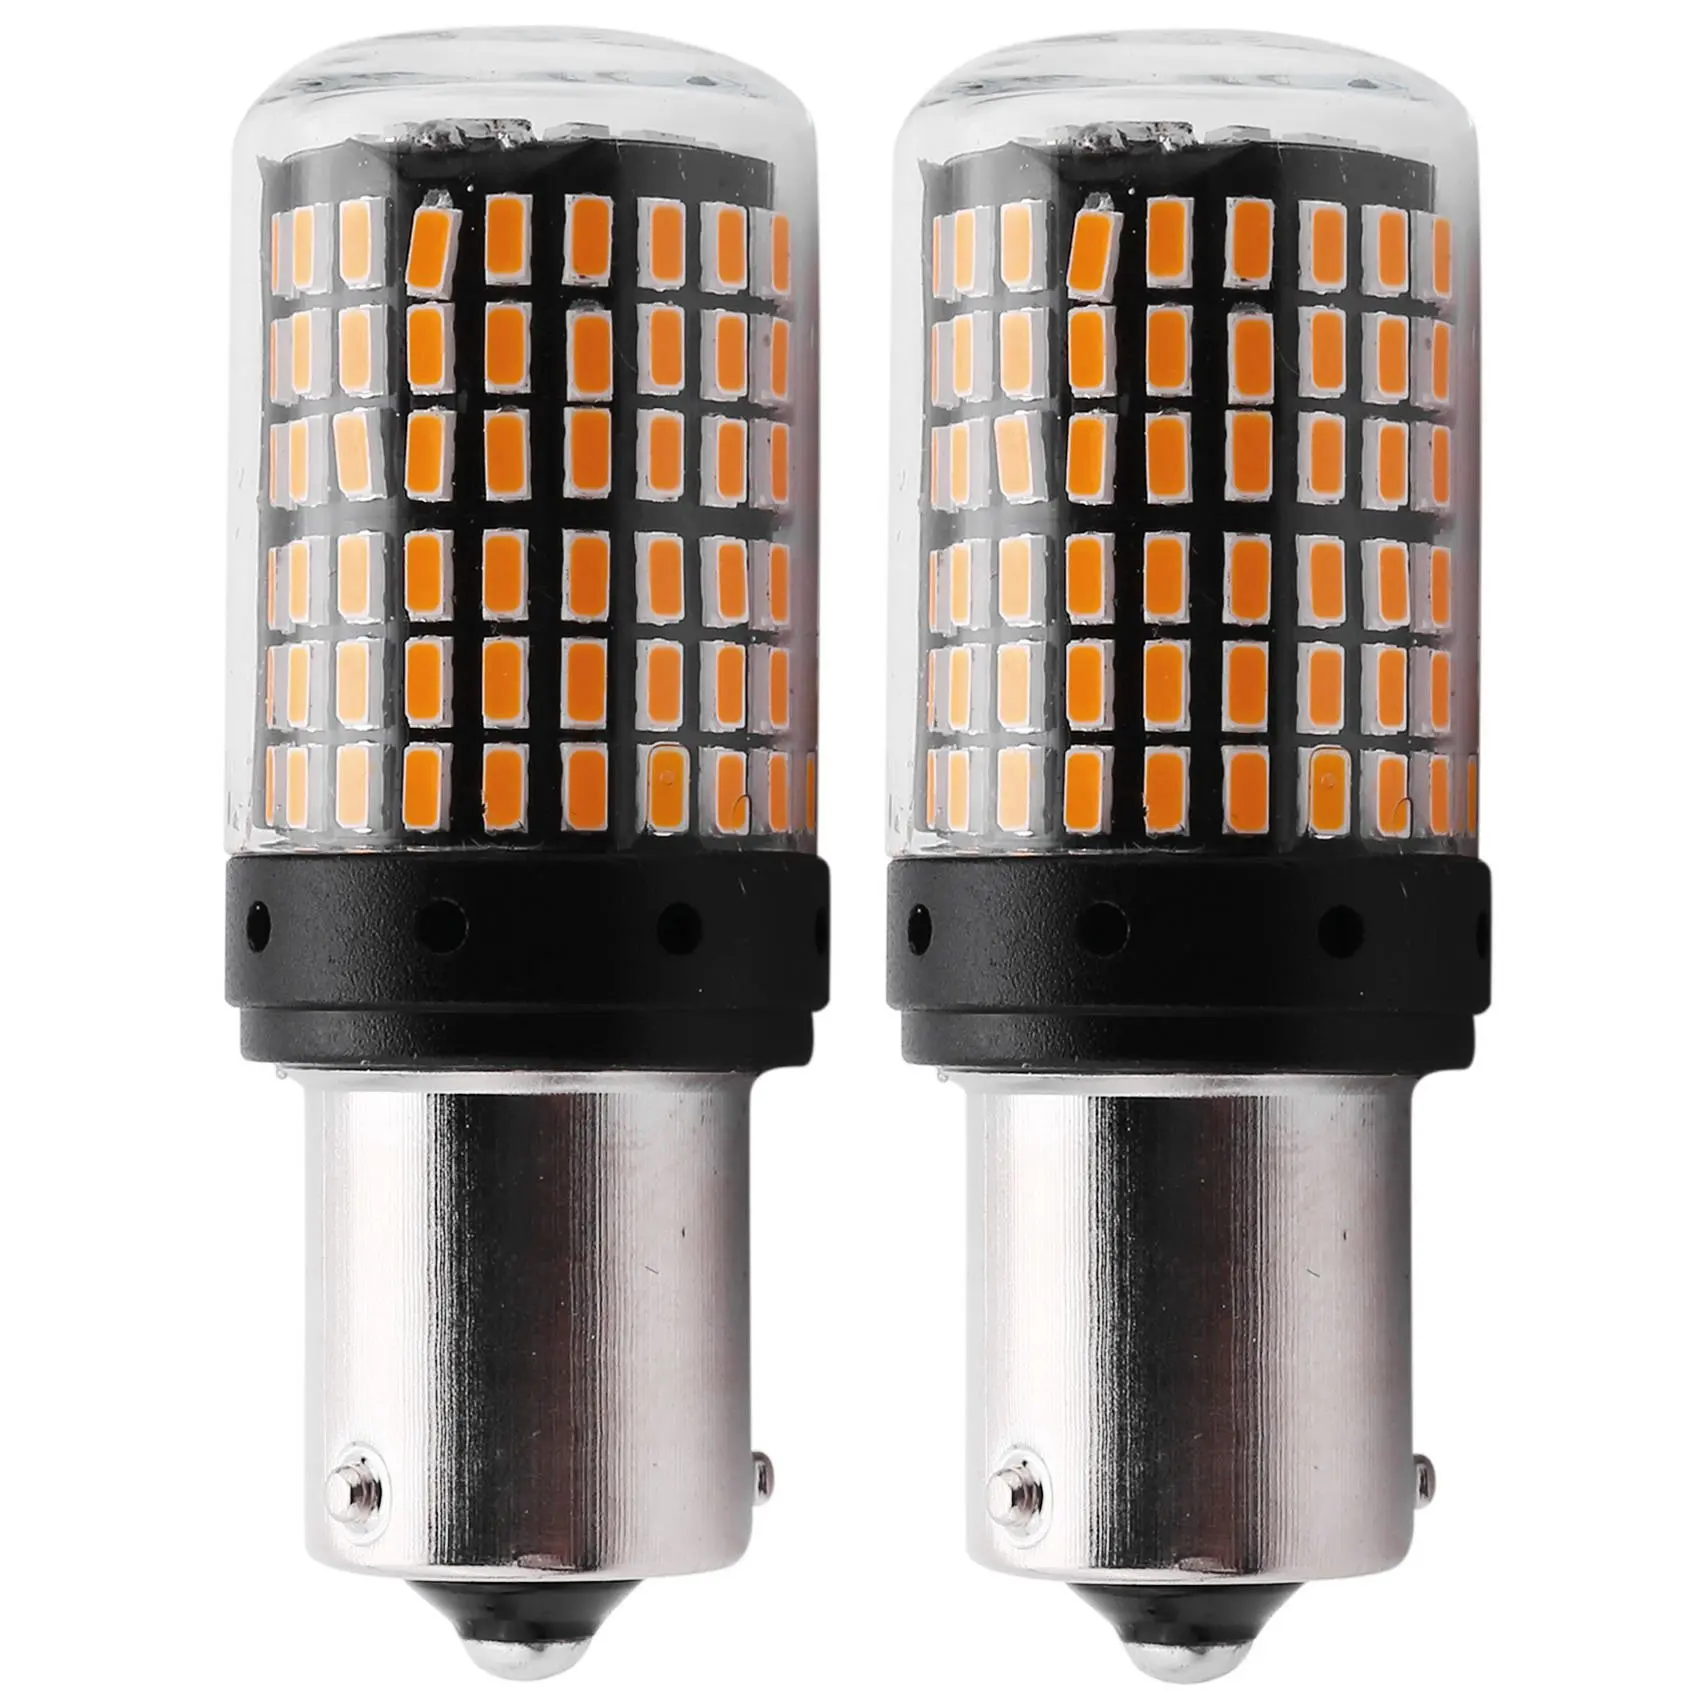 

2 шт., суперъяркие Автомобильные светодиодные лампы Canbus 1156 для указателей поворота и заднего хода